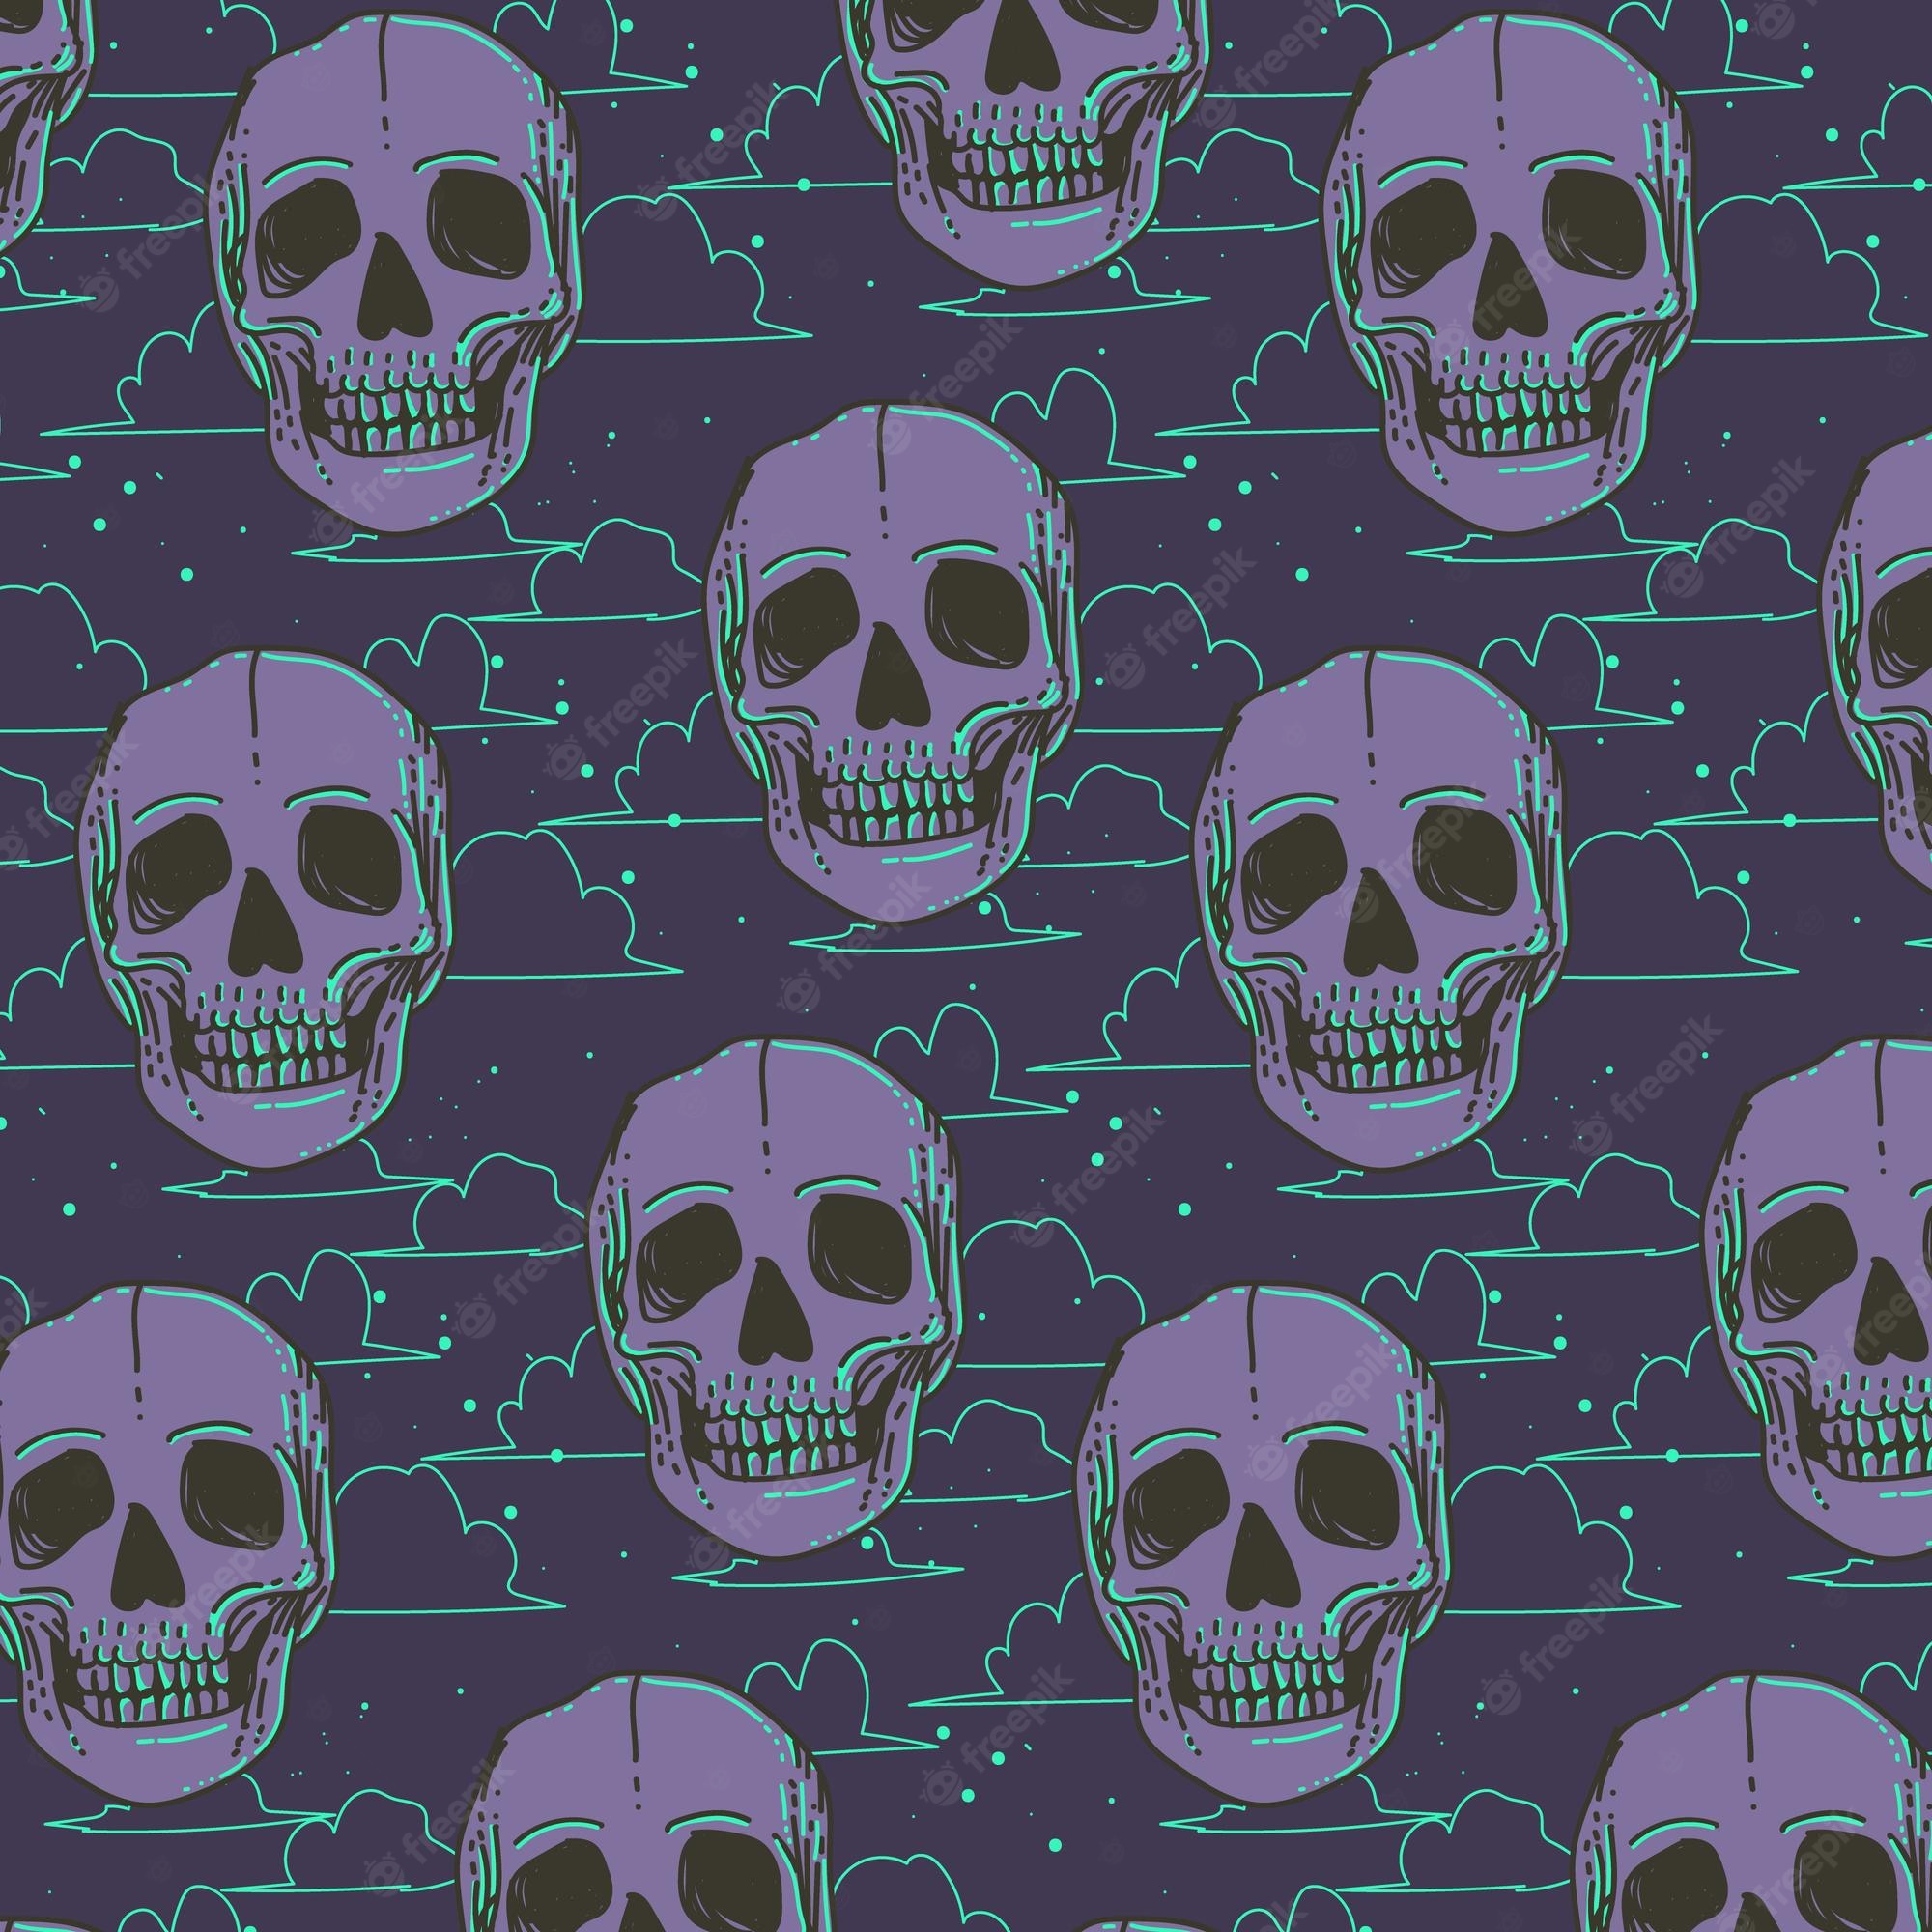 Skeleton Wallpaper Image